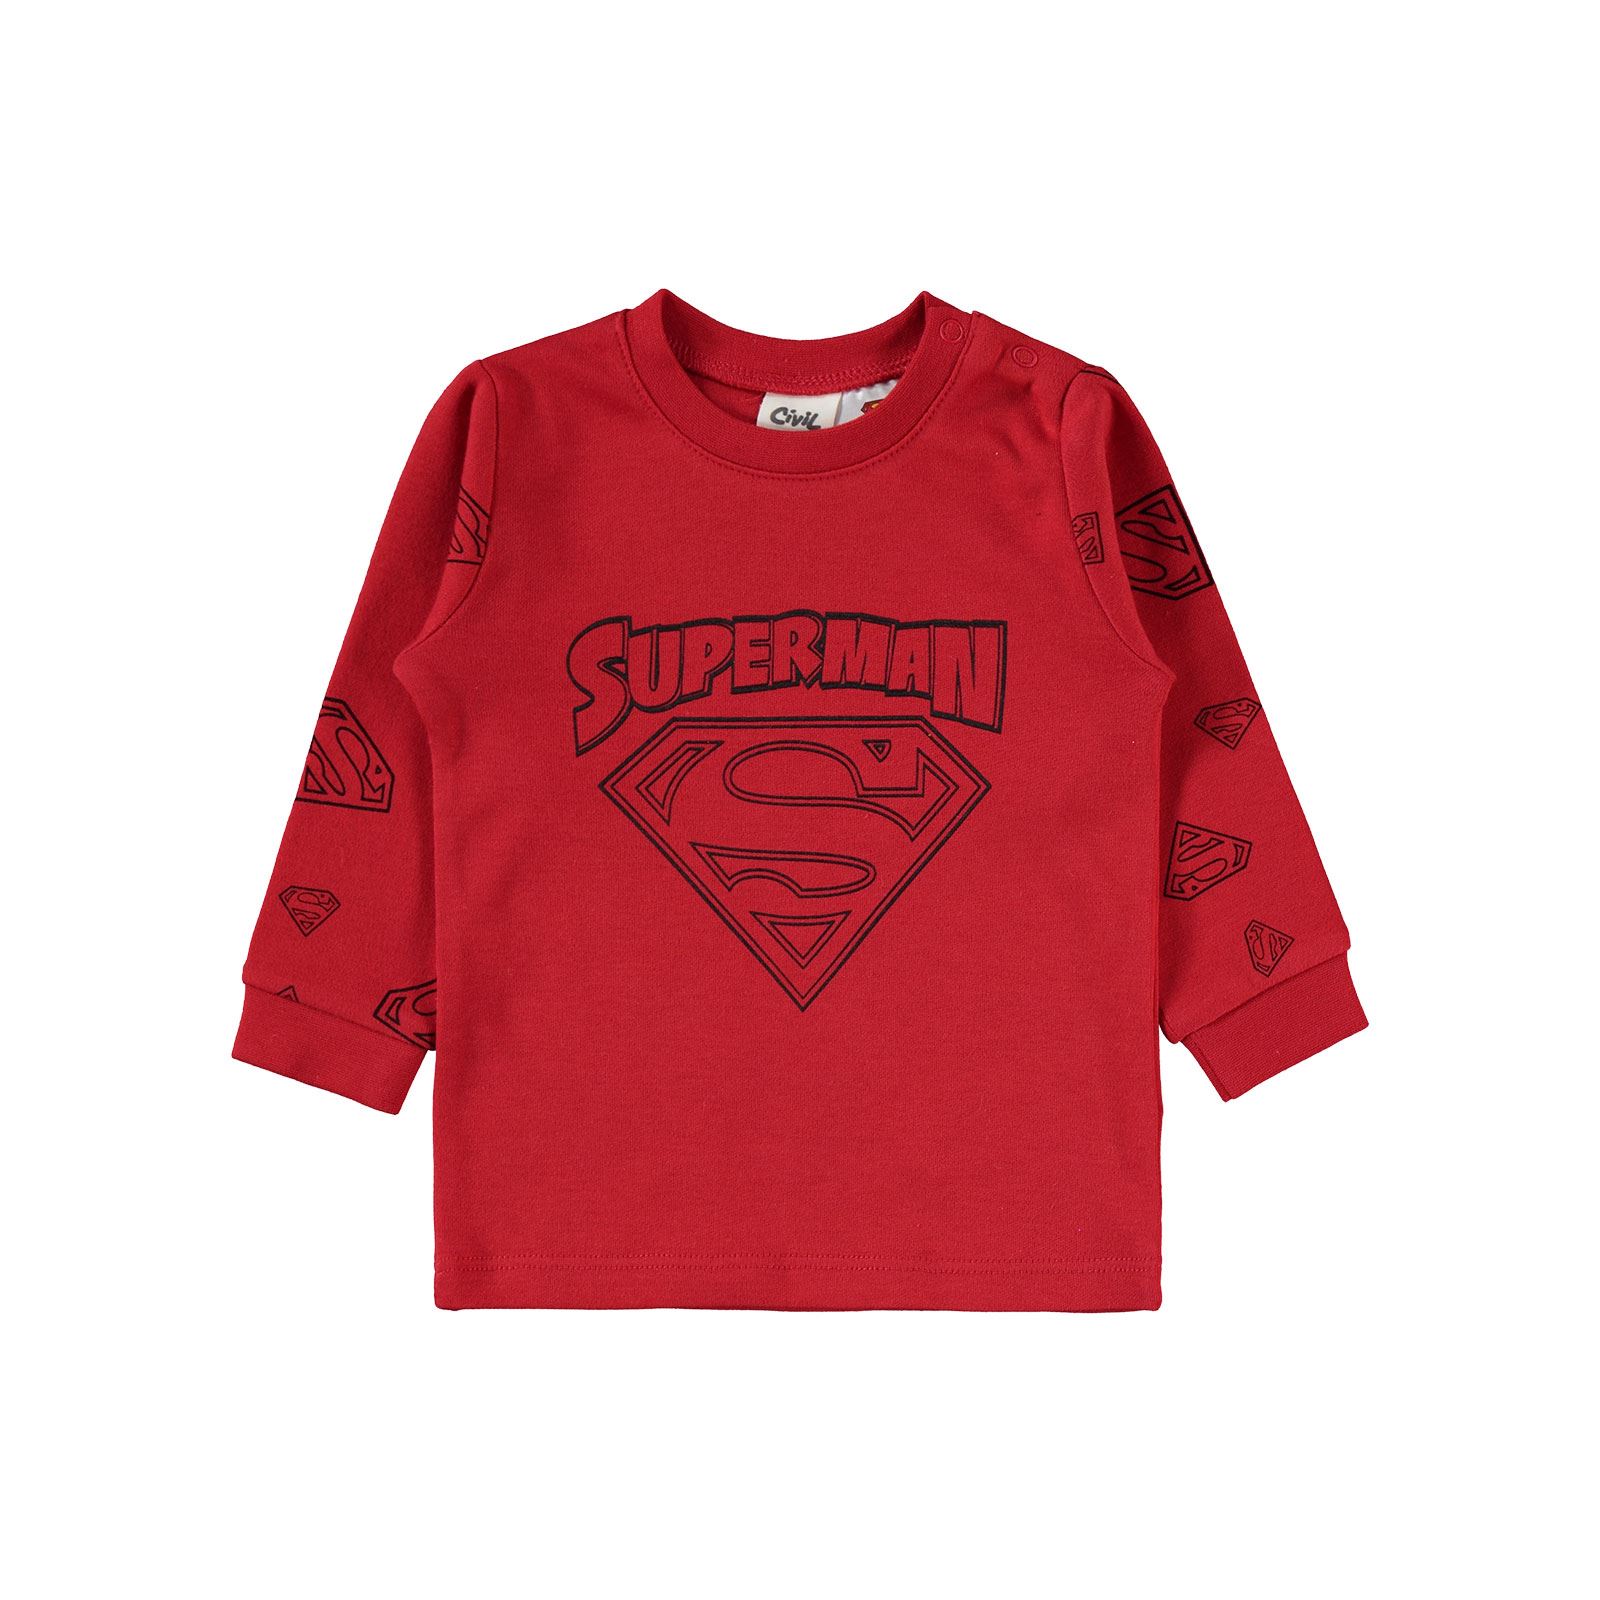 Superman Erkek Bebek Takım 6-18 Ay Kırmızı